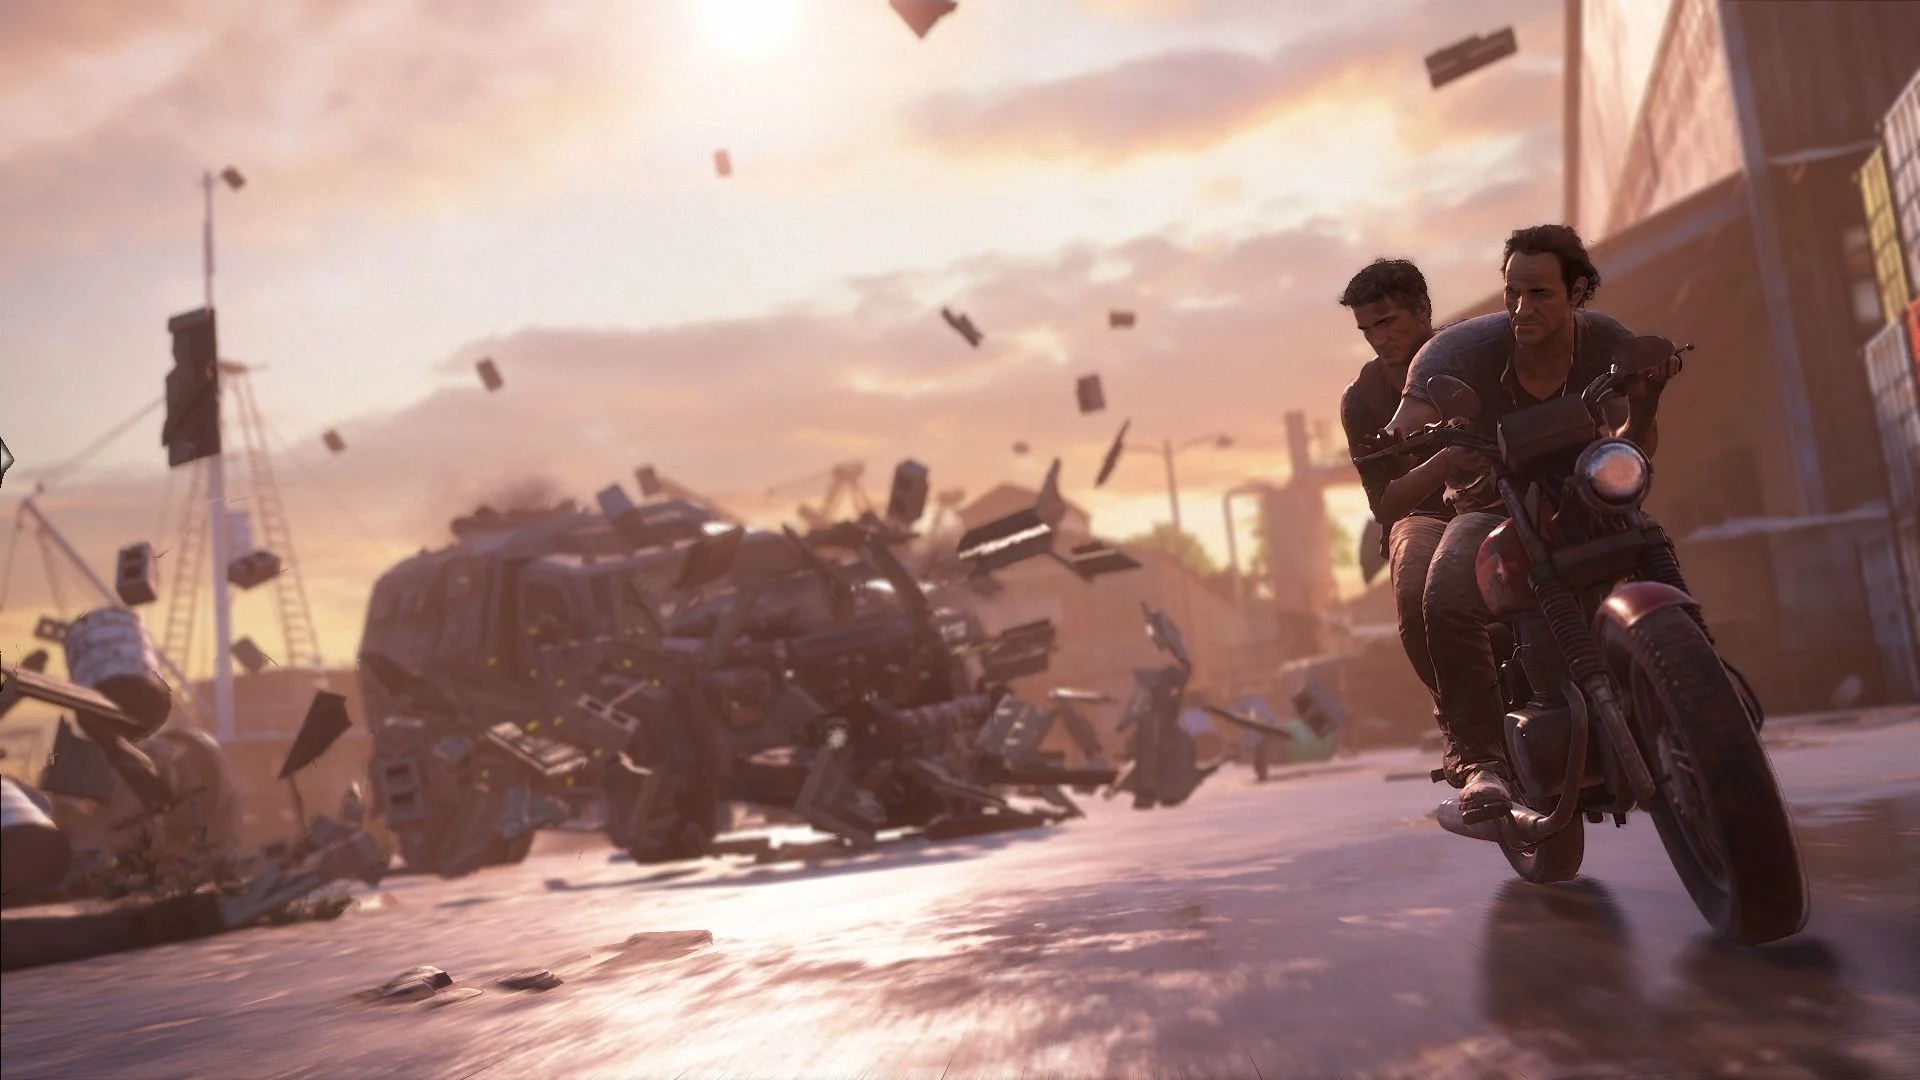 20 изумительных скриншотов Uncharted 4 - фото 18